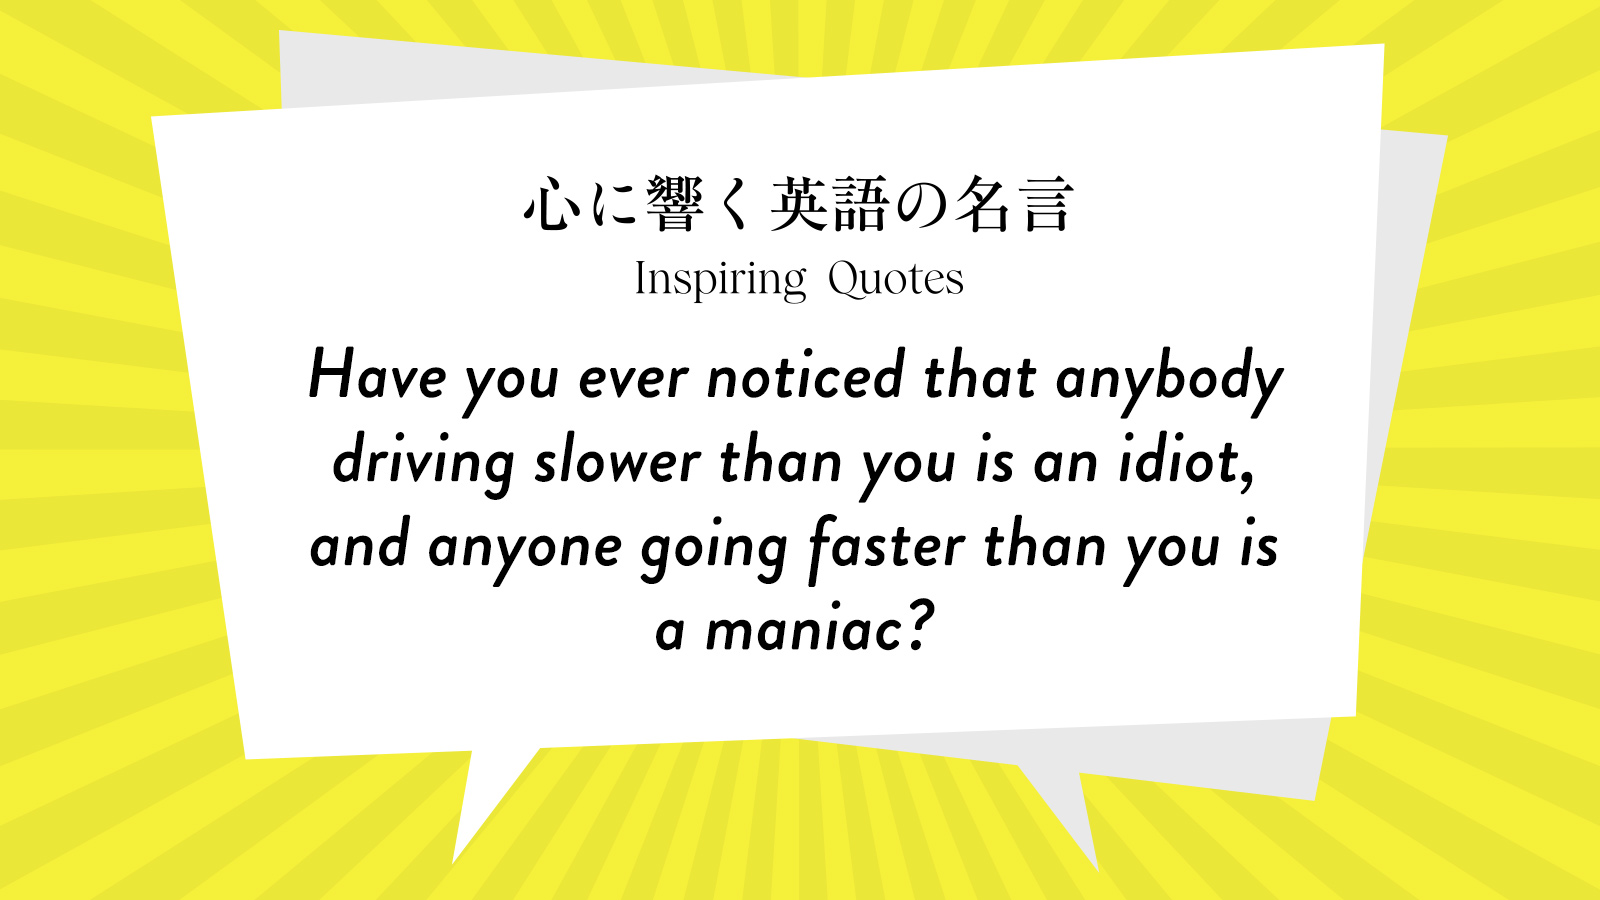 今週の名言 “Have you ever noticed that anybody driving slower than you is an idiot~” | Inspiring Quotes: 心に響く英語の名言